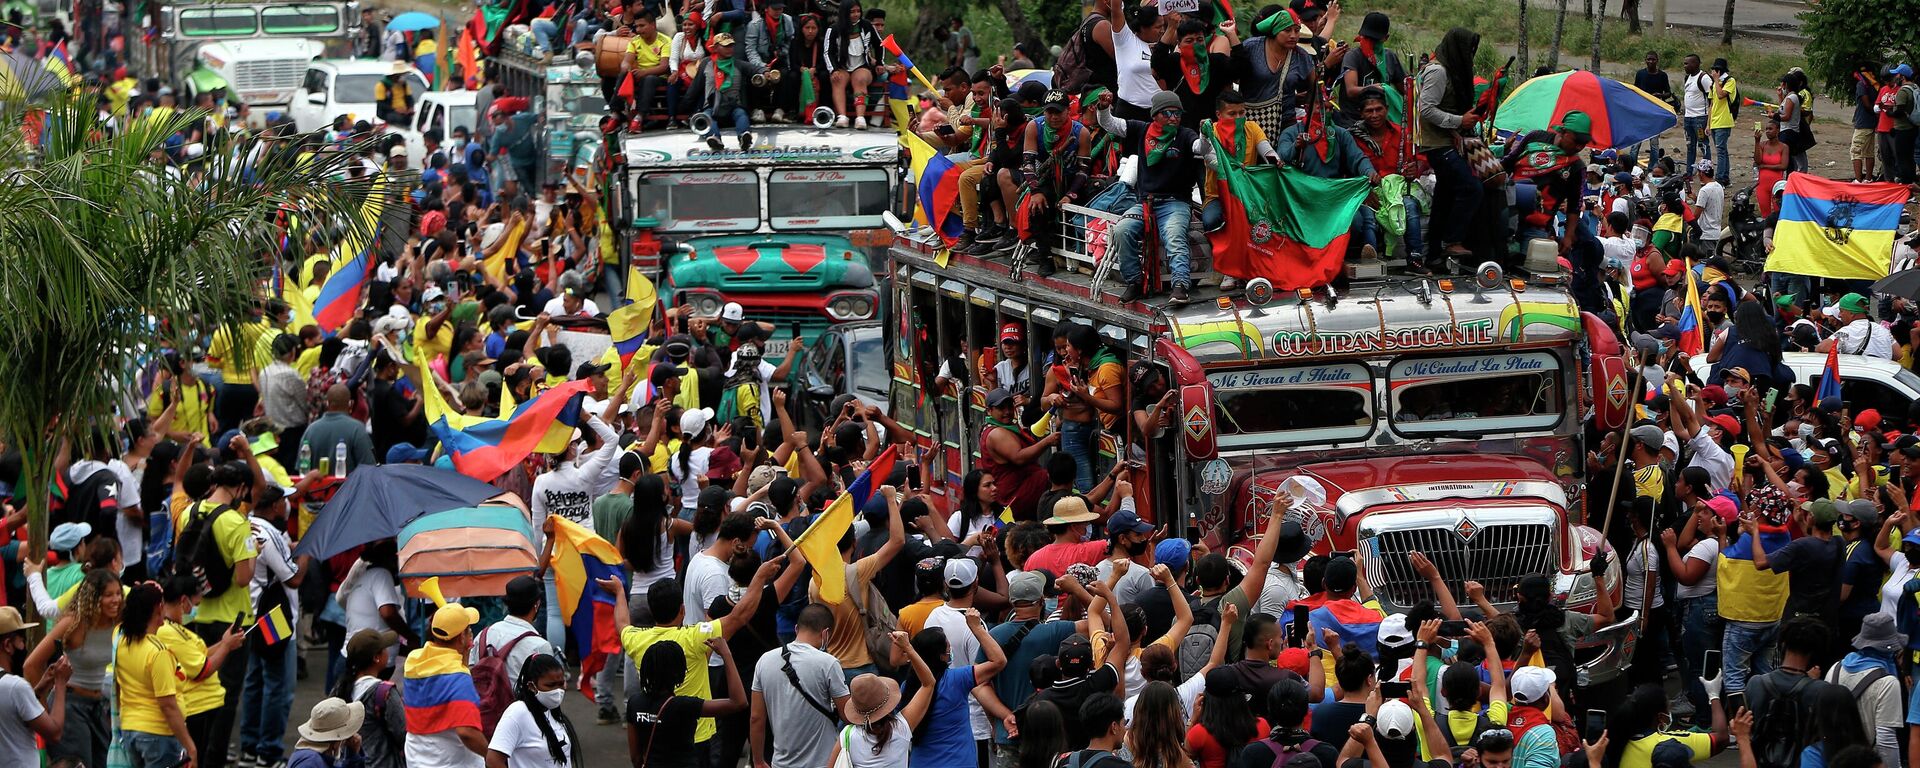 Manifestantes indígenas asisten a una marcha antigubernamental en Cali, Colombia, el miércoles 12 de mayo de 2021 - Sputnik Mundo, 1920, 14.08.2021